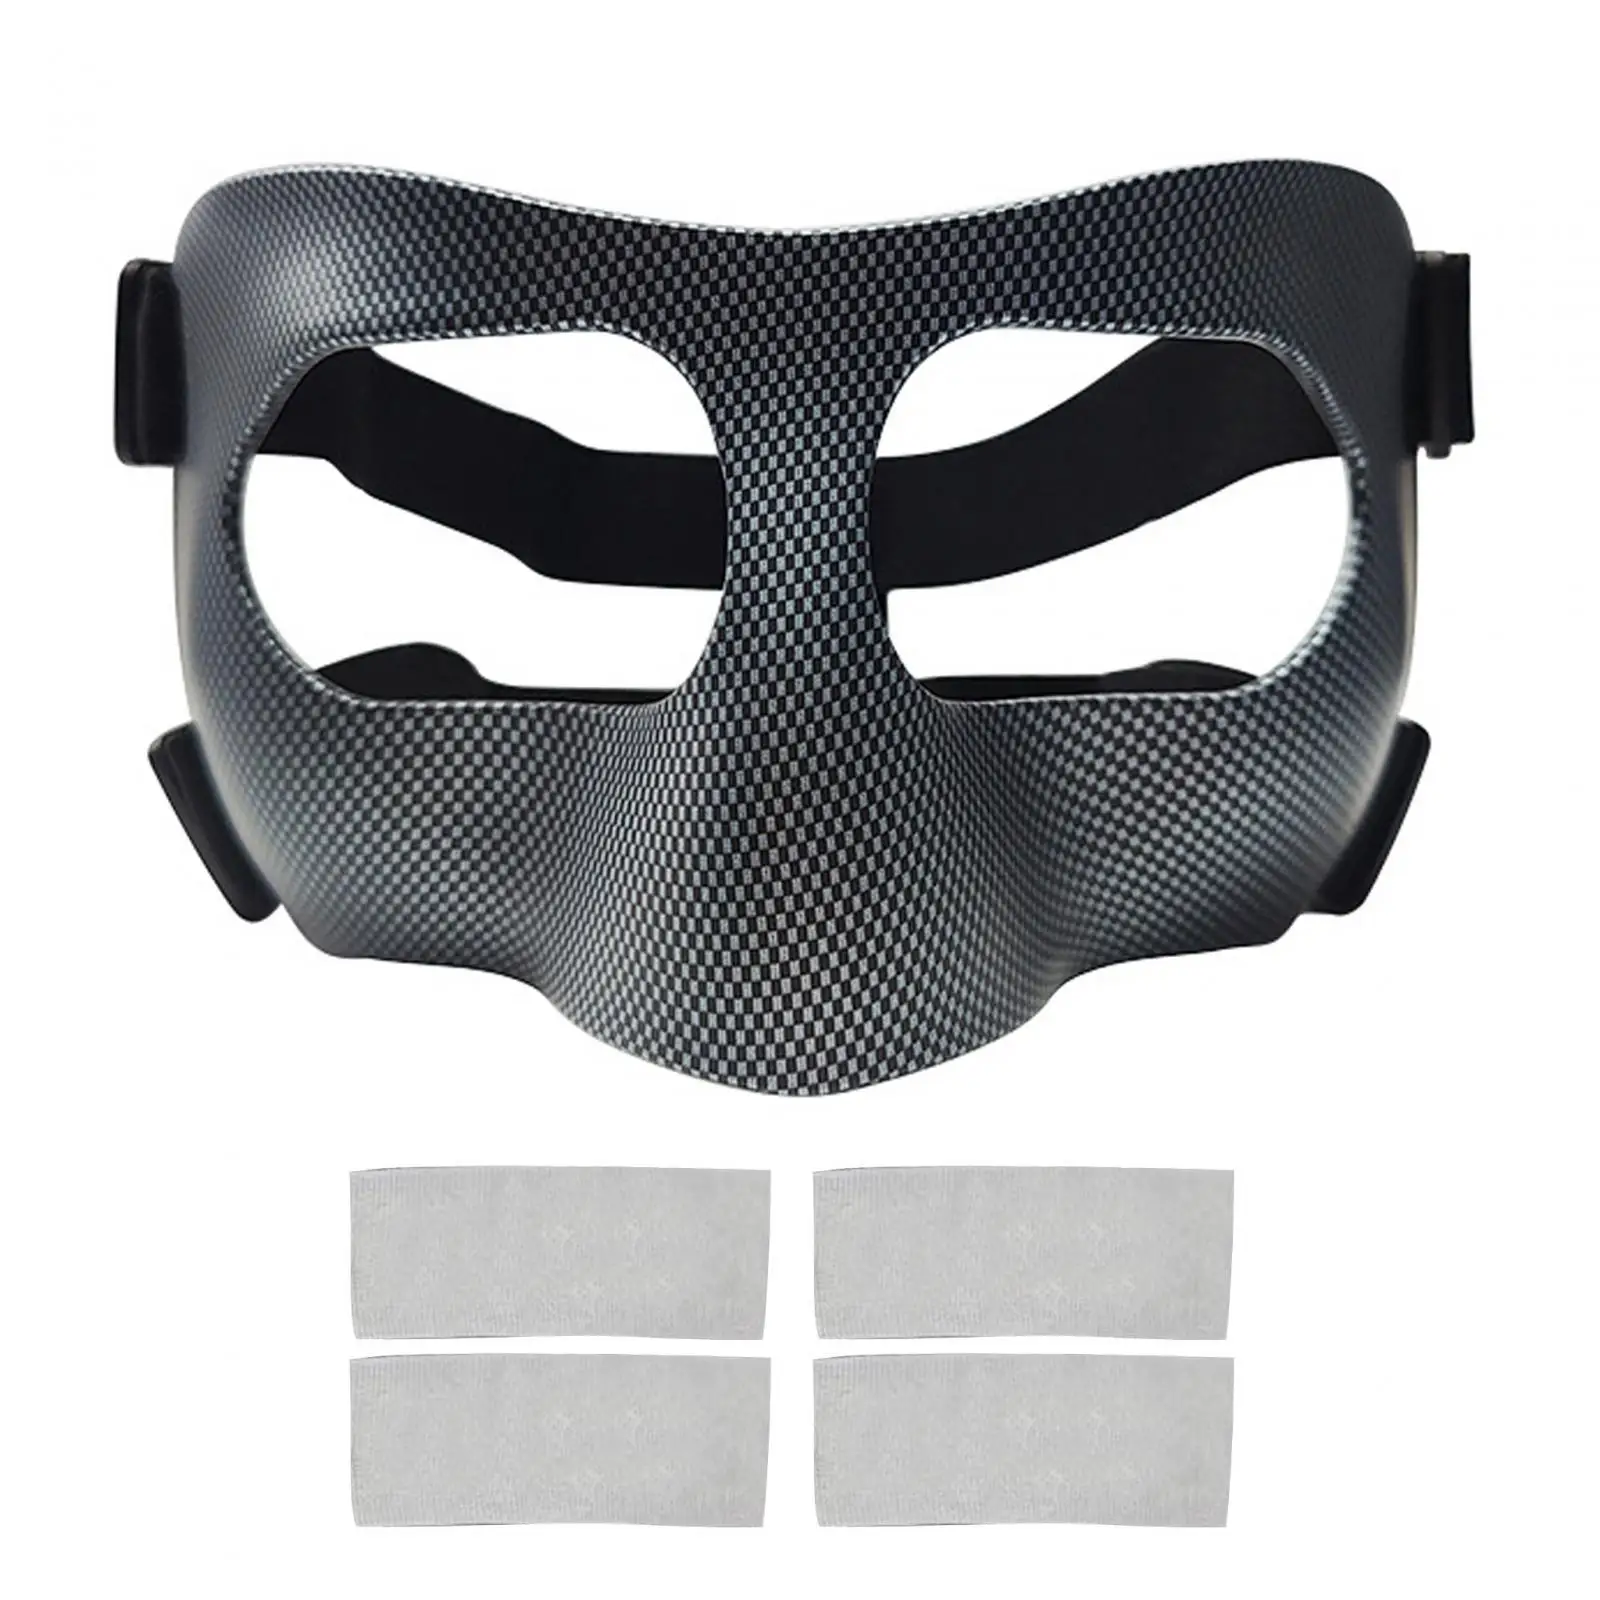 

Баскетбольная маска, прочная баскетбольная маска для носа, для занятий спортом, карате, футболом